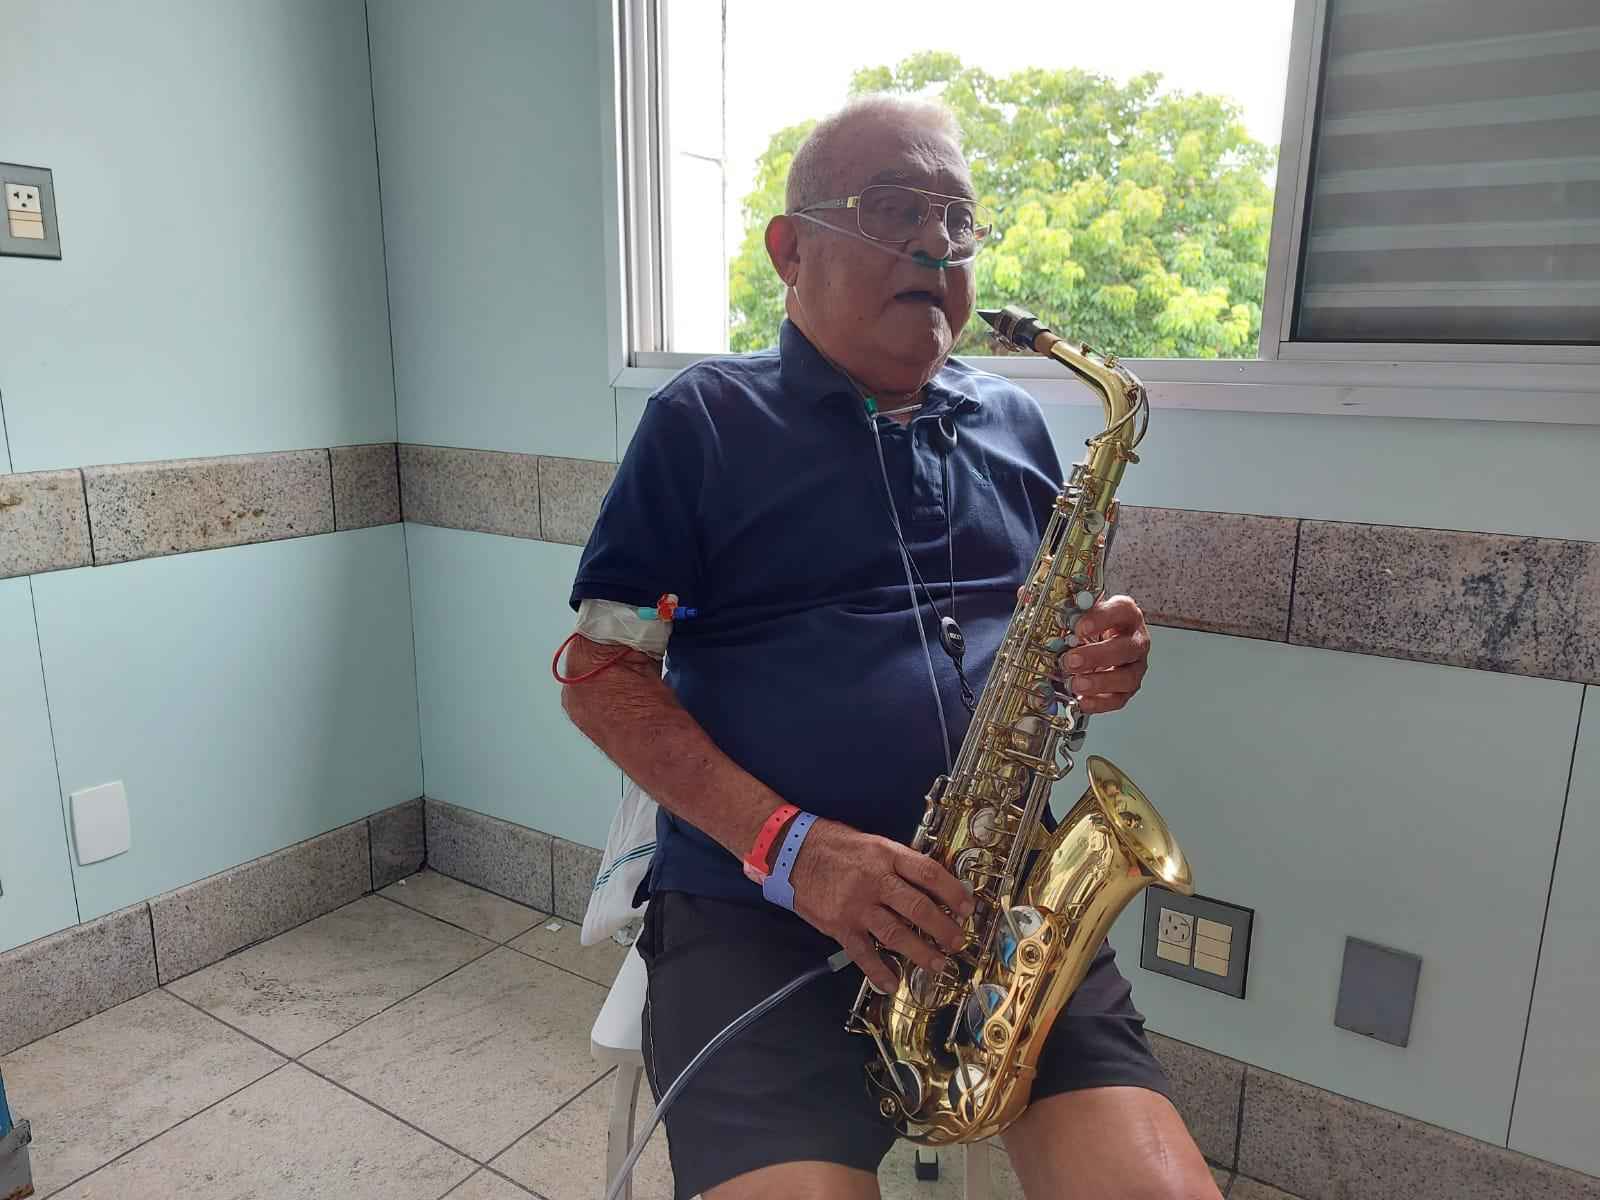 Recuperado: Idoso que tocava saxofone em hospital recebe alta após 40 dias - Reprodução